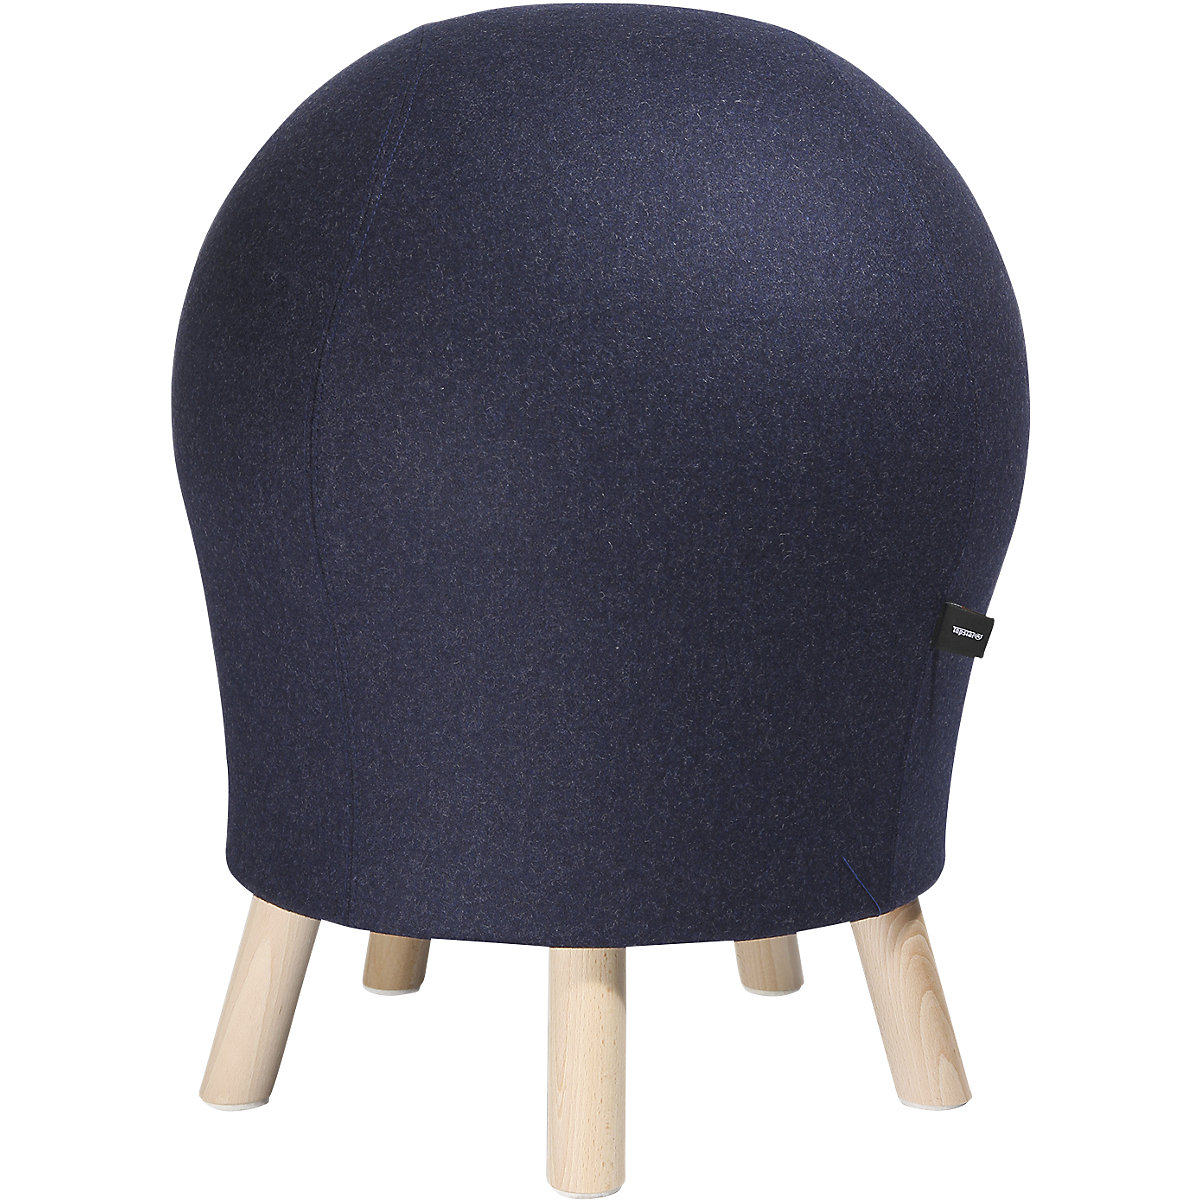 Fitness stolička SITNESS 5 ALPINE – Topstar, výška sedáku cca 620 mm, potah tmavě modrý-6